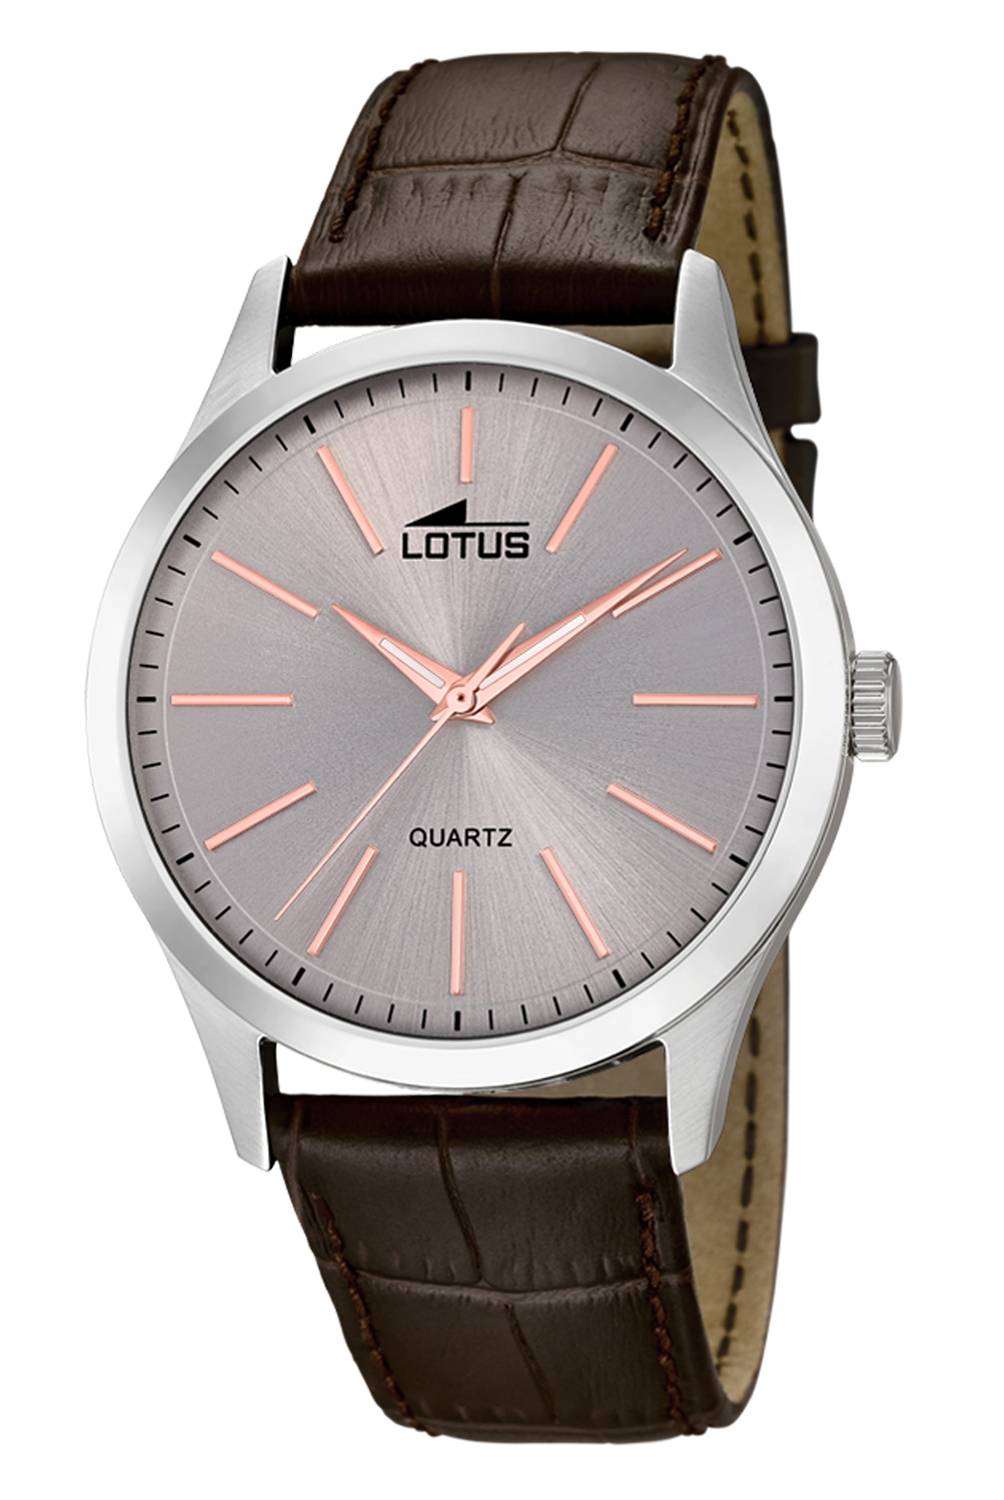 Lotus - Reloj Hombre Quartz 15961/7 